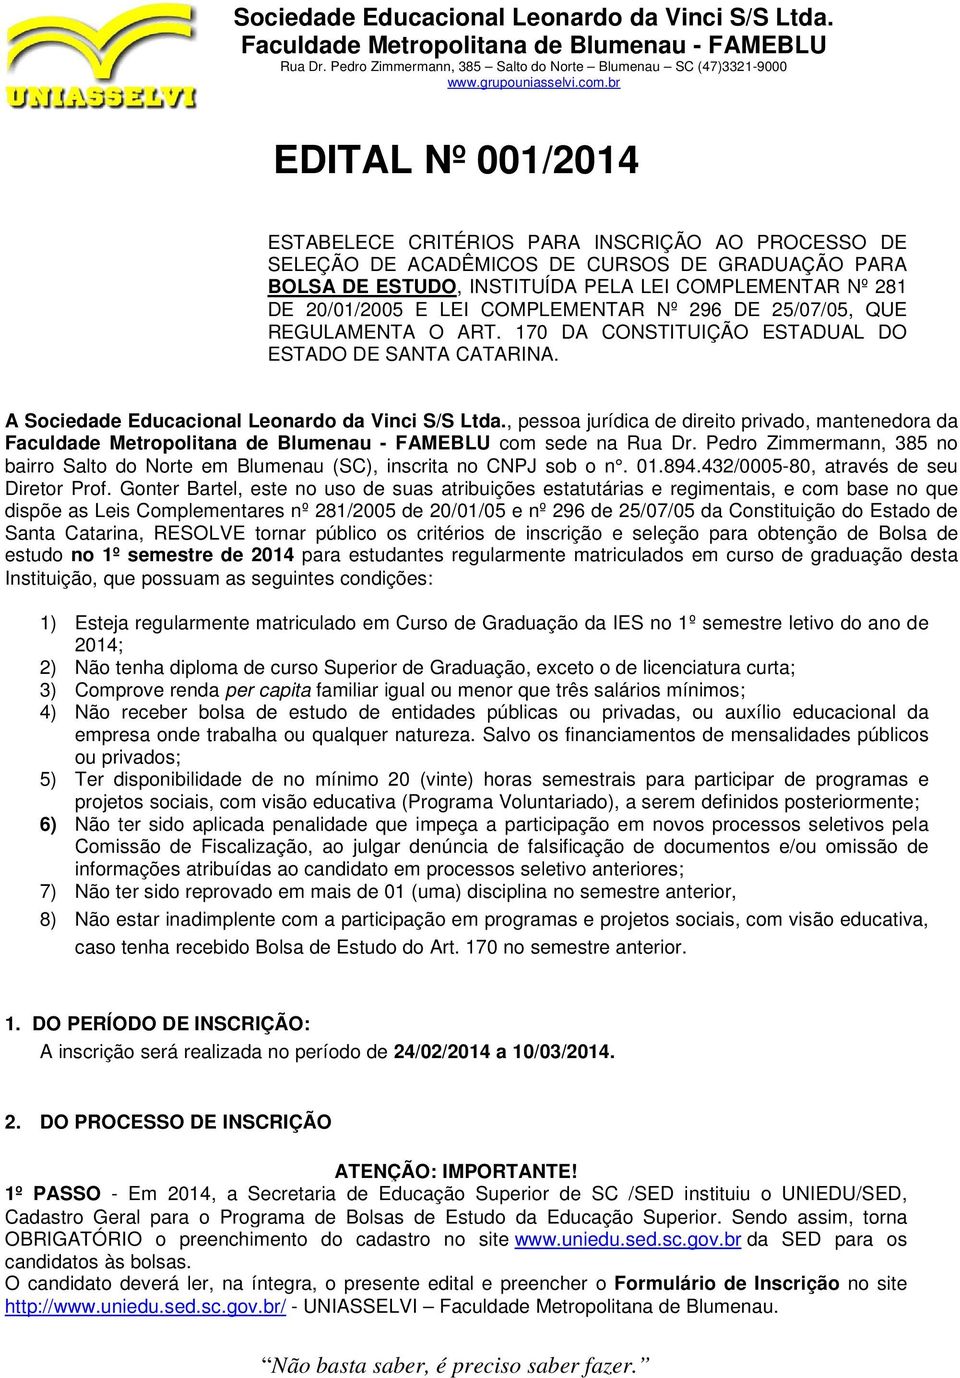 , pessoa jurídica de direito privado, mantenedora da com sede na Rua Dr. Pedro Zimmermann, 385 no bairro Salto do Norte em Blumenau (SC), inscrita no CNPJ sob o n. 01.894.